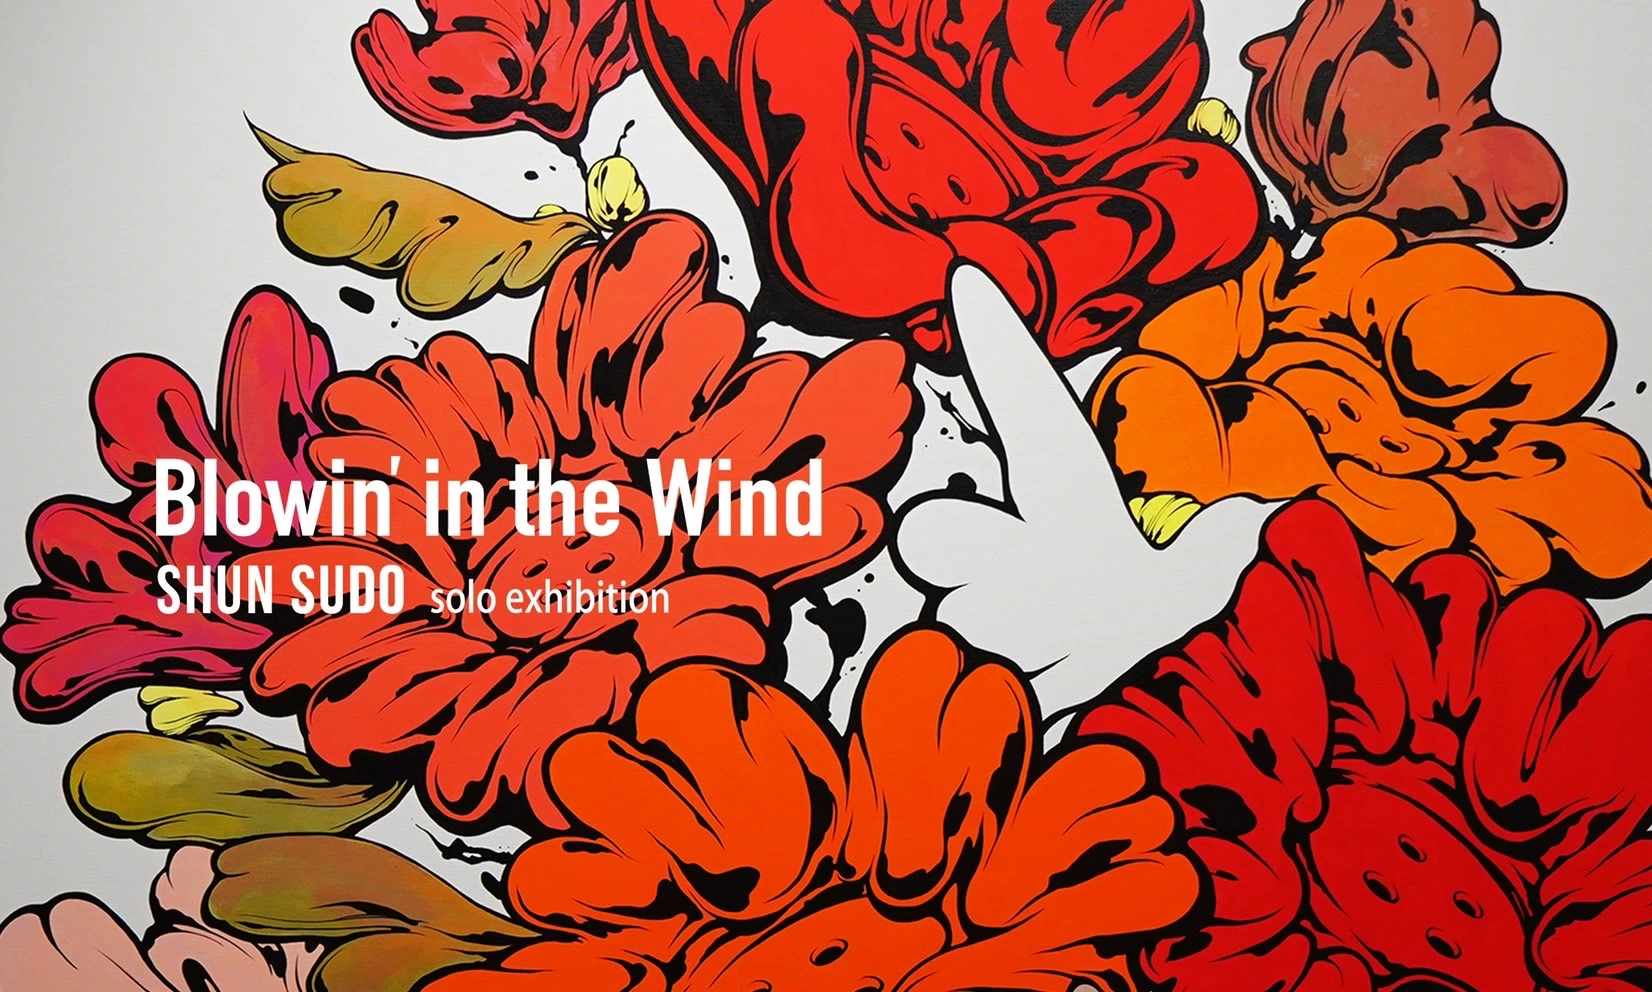 SHUN SUDO solo exhibition『Blowin’ in the Wind』